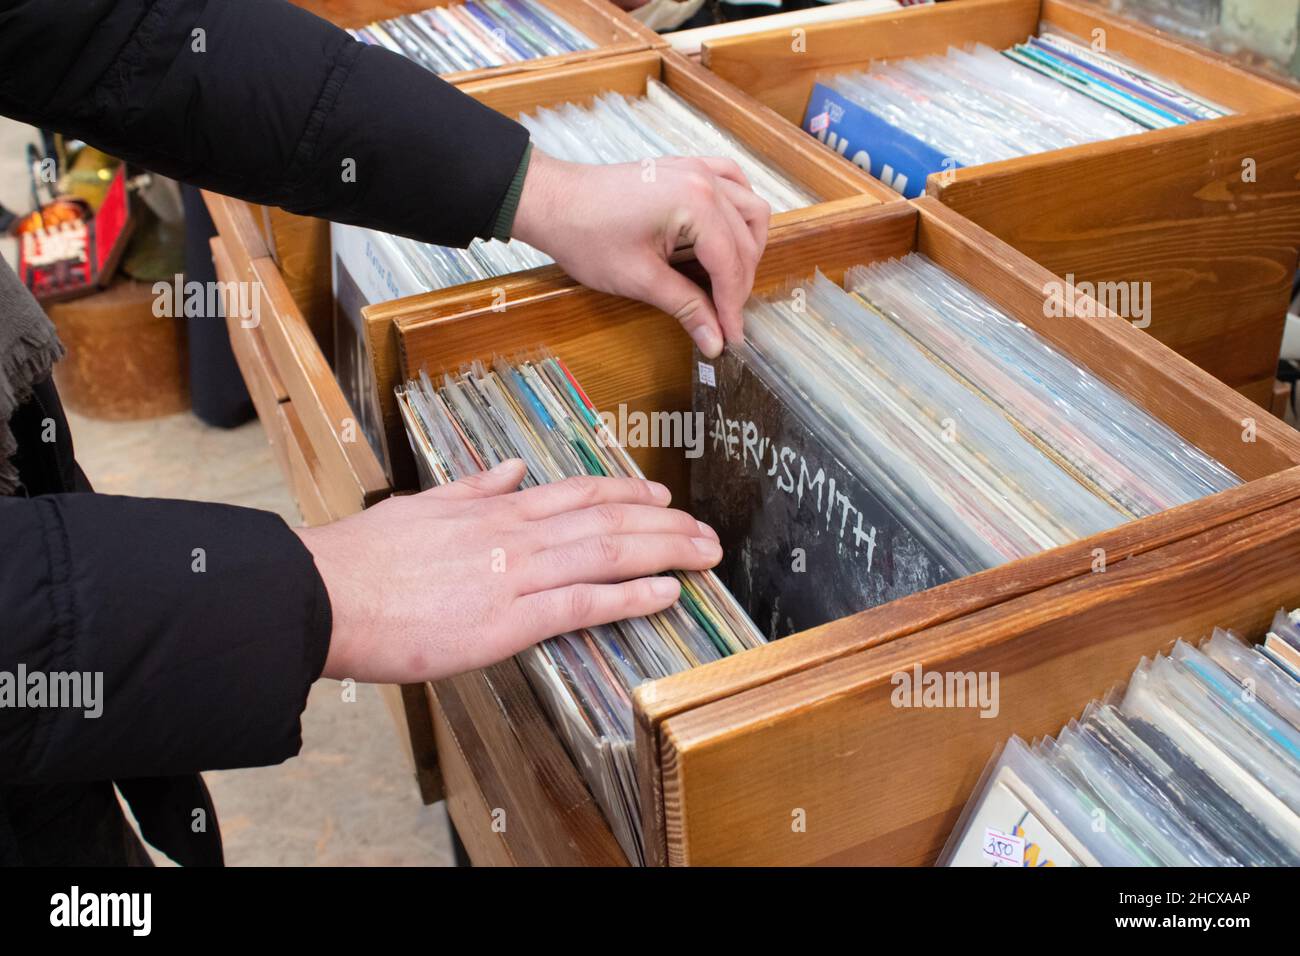 Lviv, Ucraina - 7 marzo 2021 : un uomo che acquista dischi vinilici vintage sul mercato delle pulci o sulla vendita di garage. Scatole in legno con dischi singoli in vinile retrò, selec Foto Stock